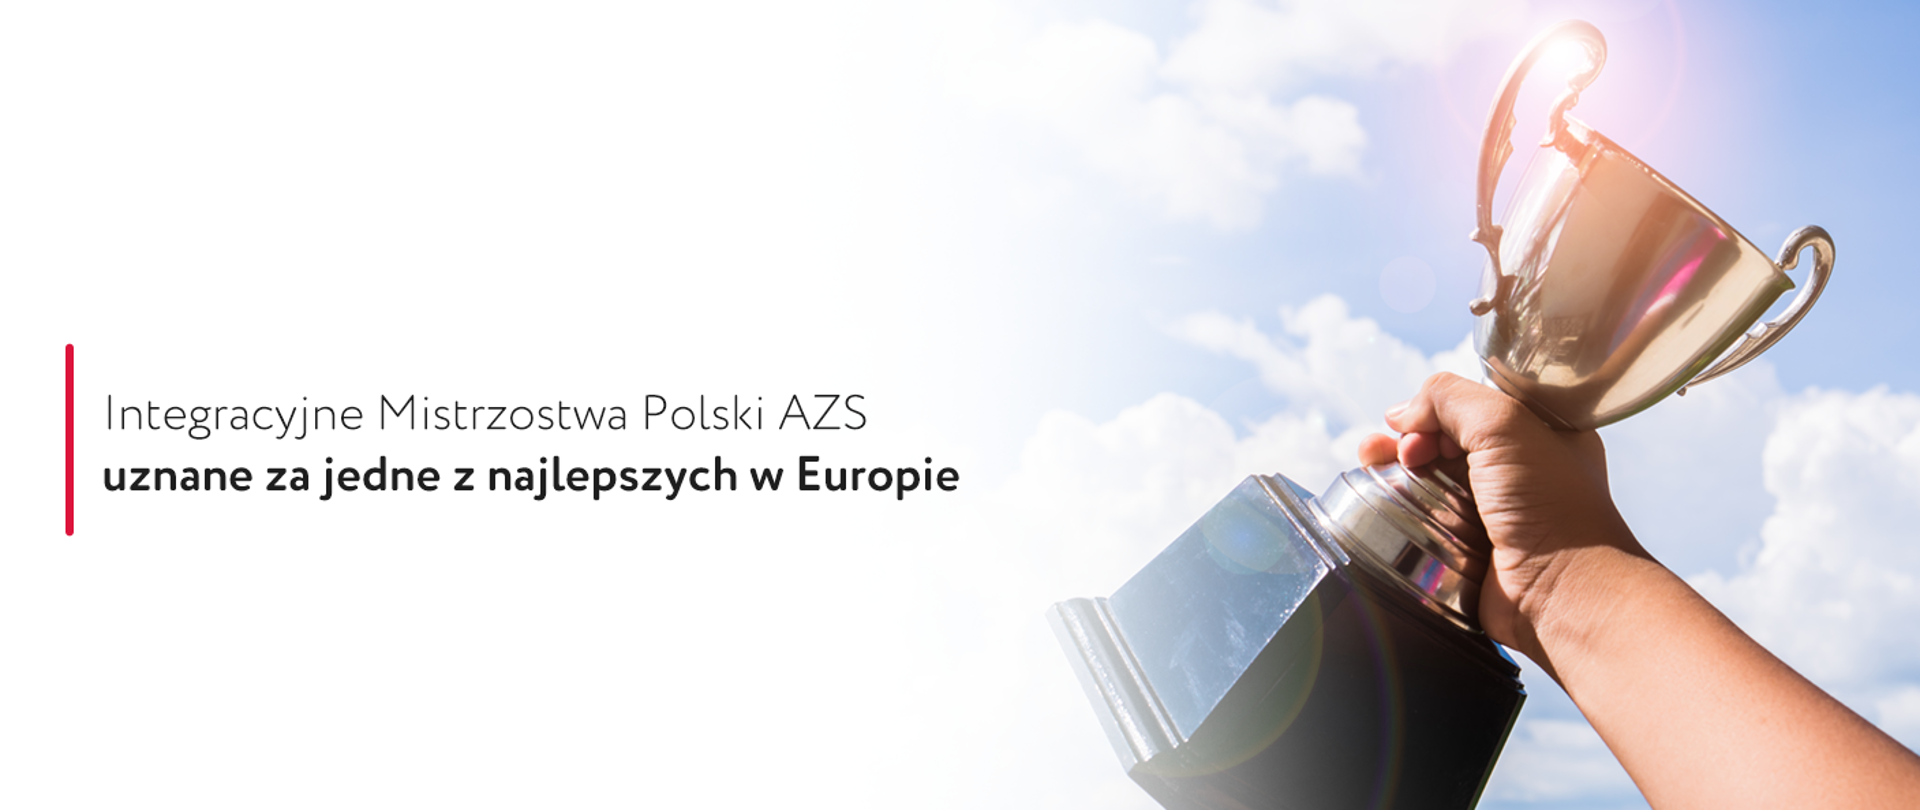 Grafika dotycząca sukcesów Integracyjnych Mistrzostw Polski AZS.